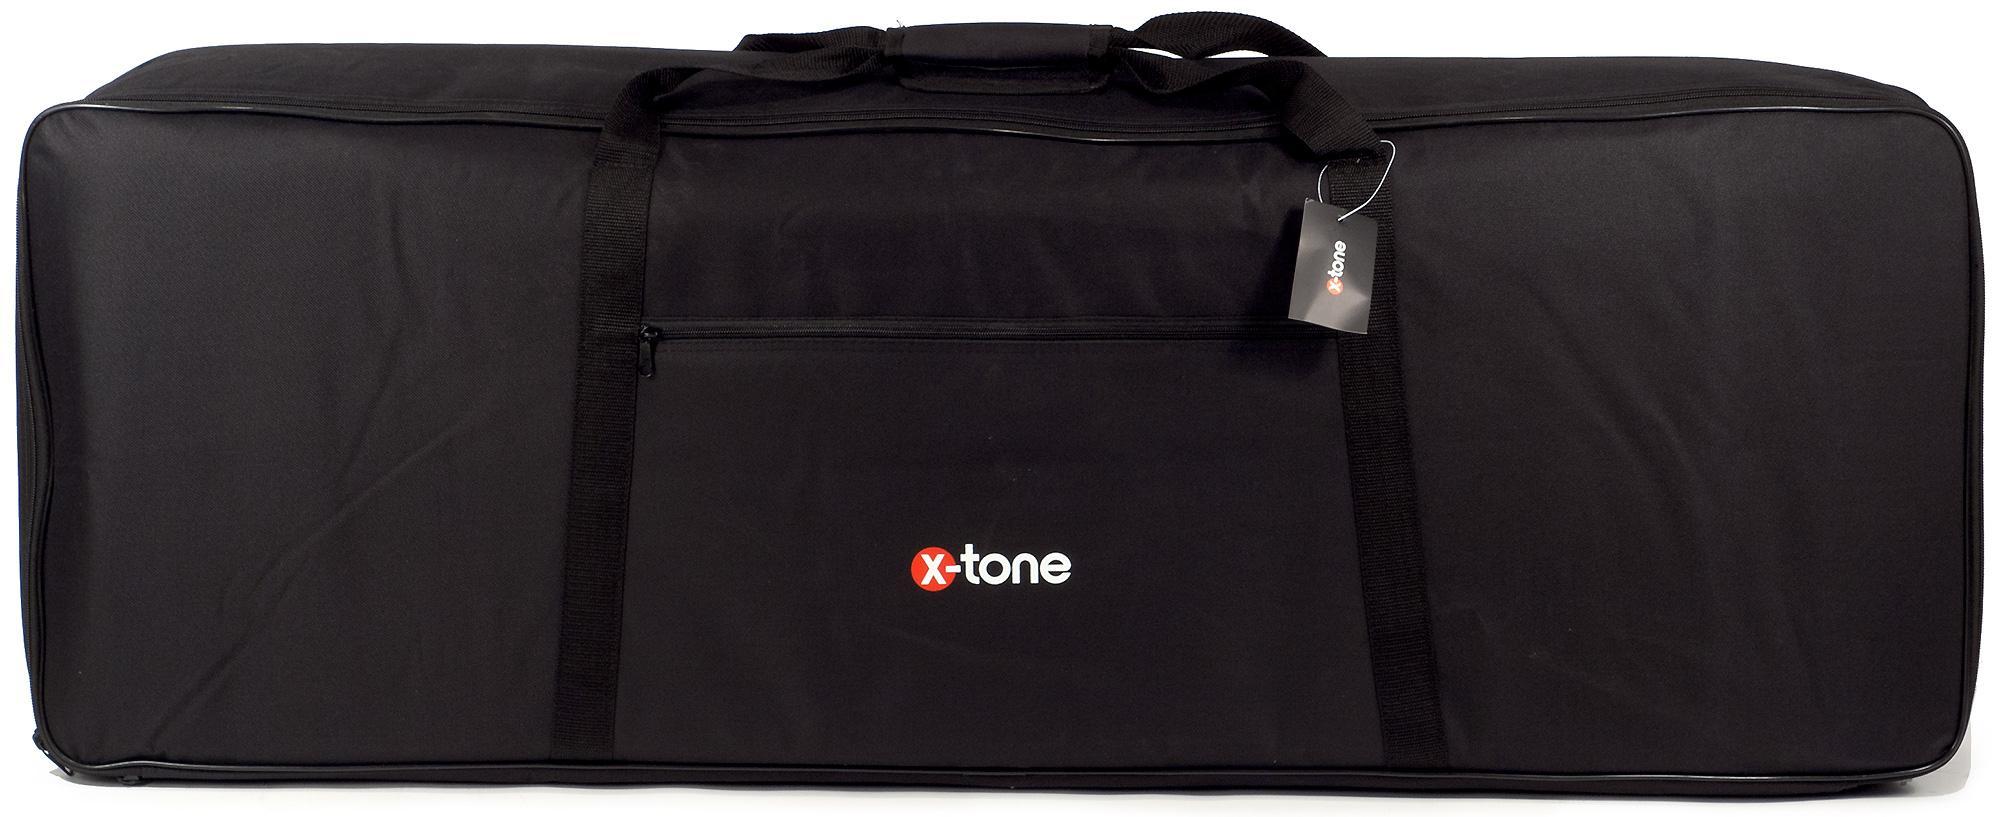 Tasche für keyboard X-tone 2102 Sofbag Keyboard 88 - 10mm